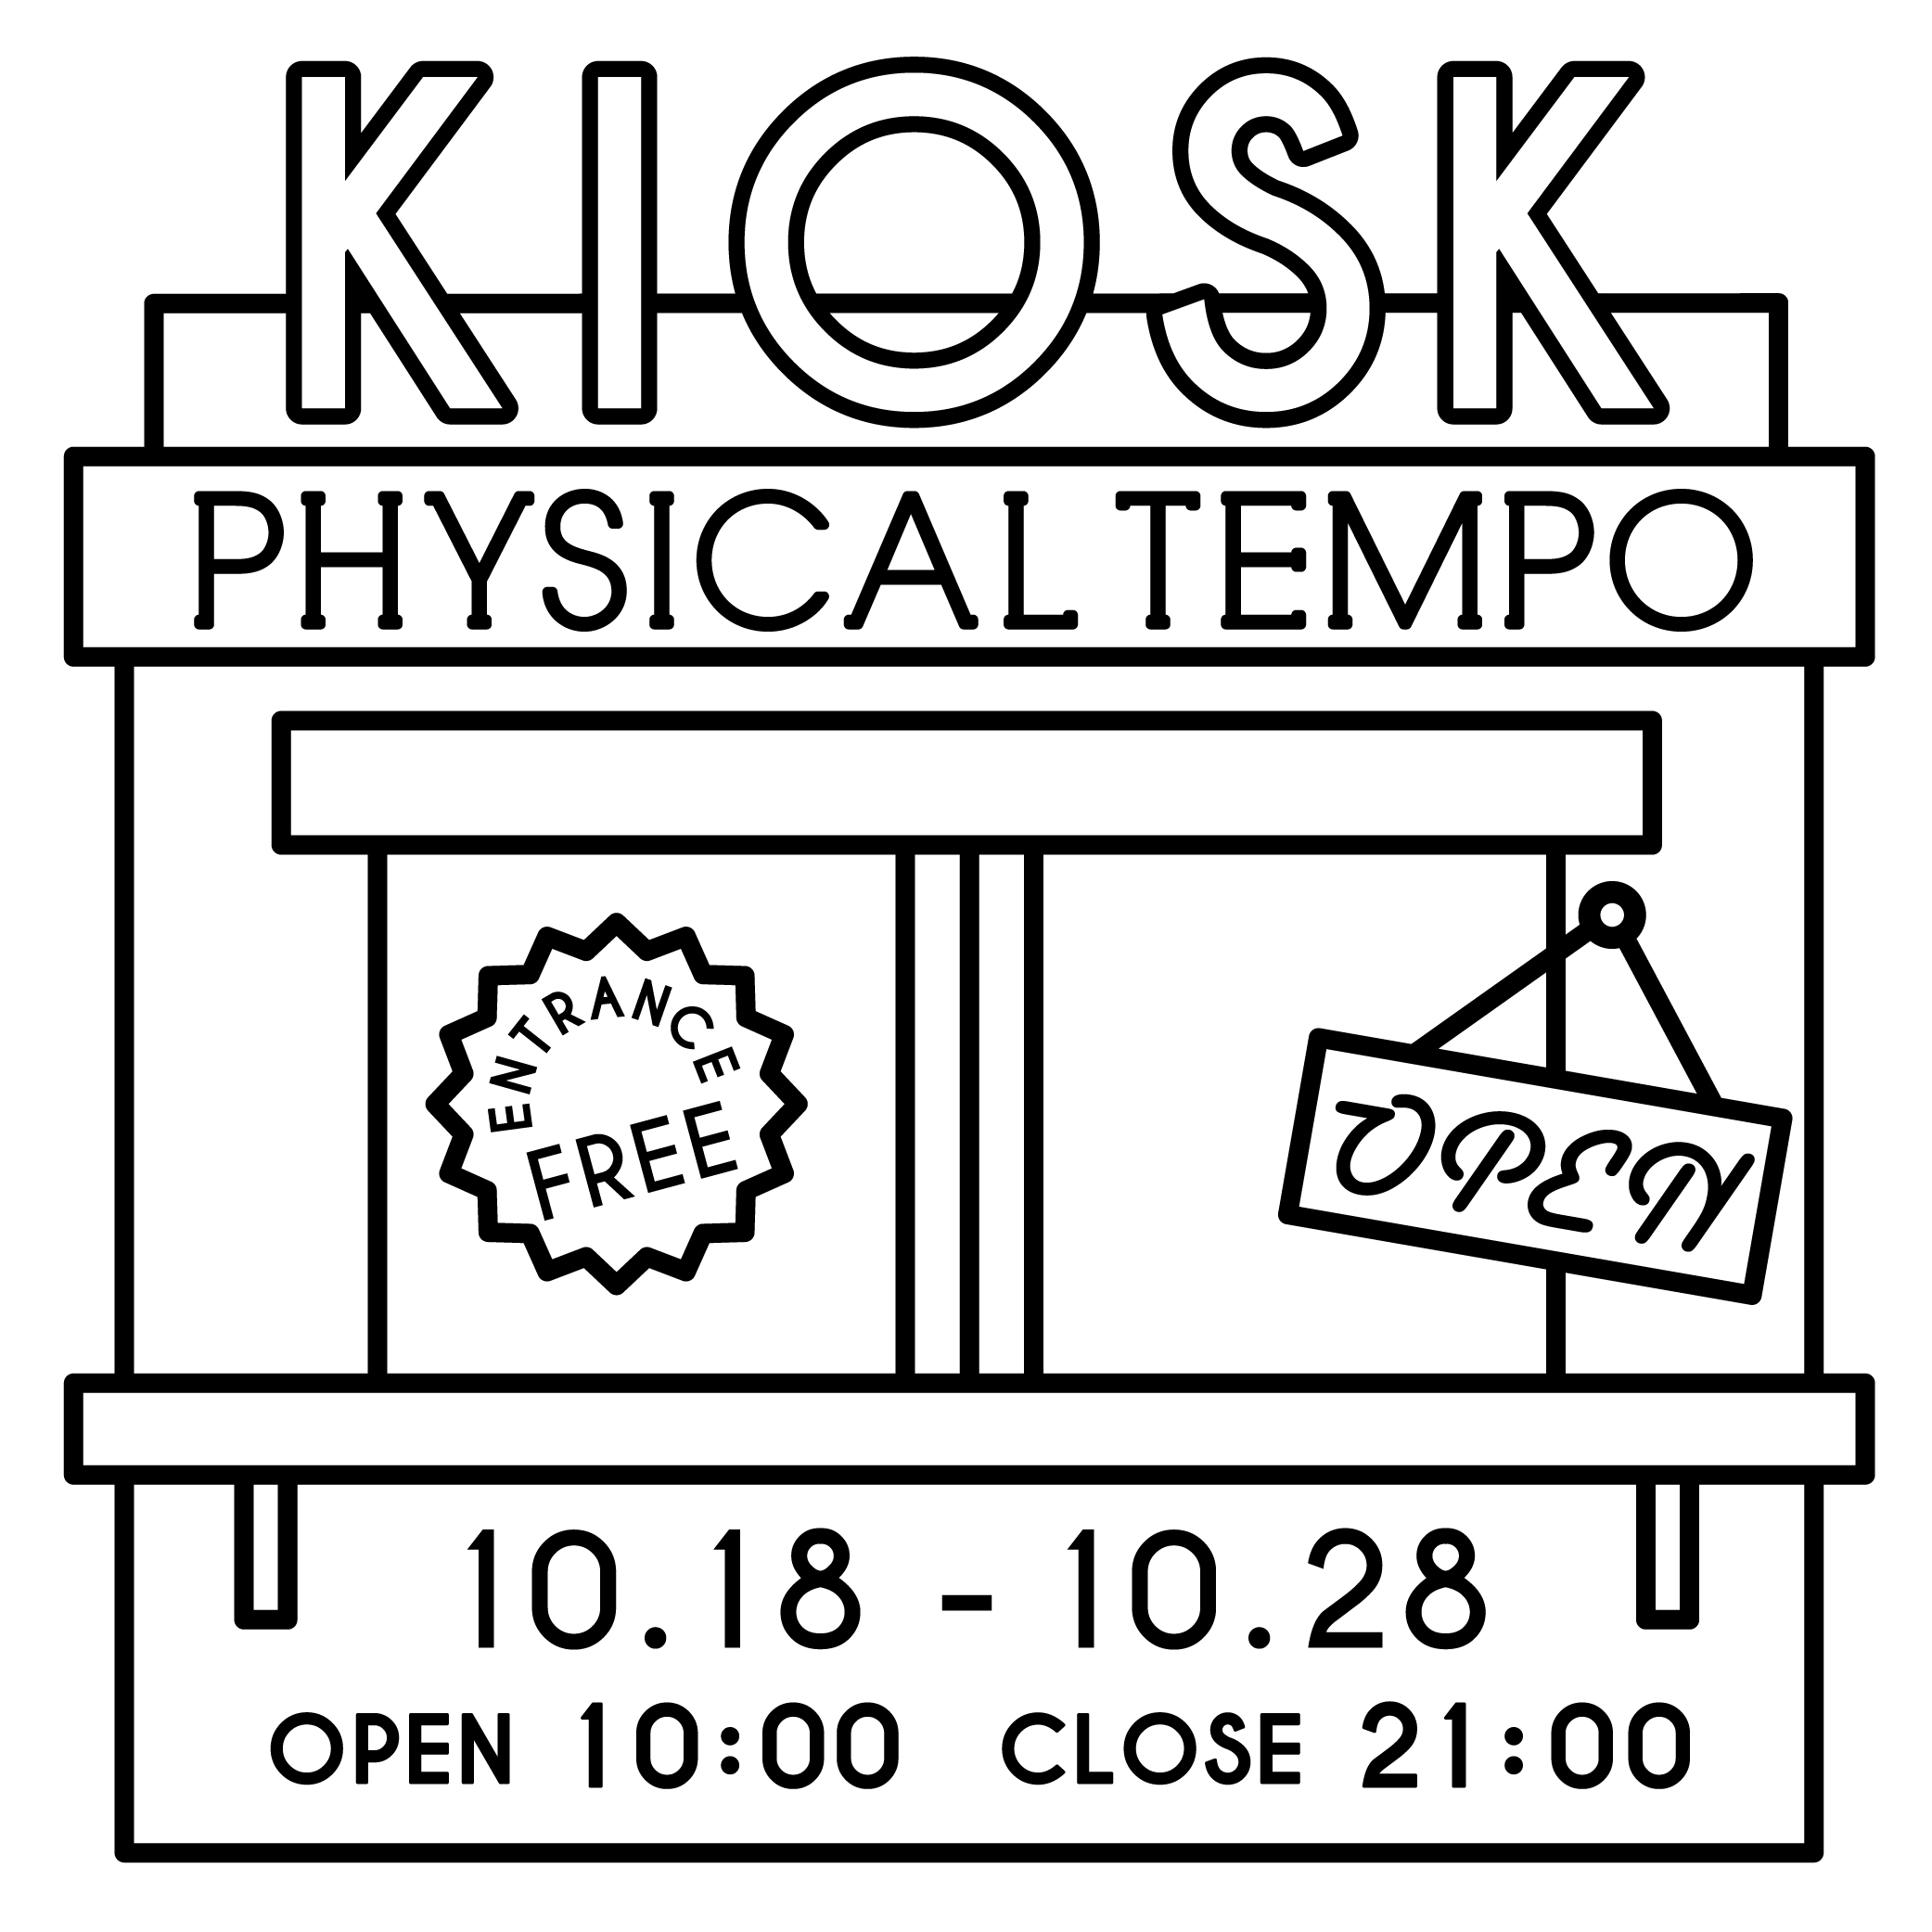 p_tempo_kiosk_logo-01